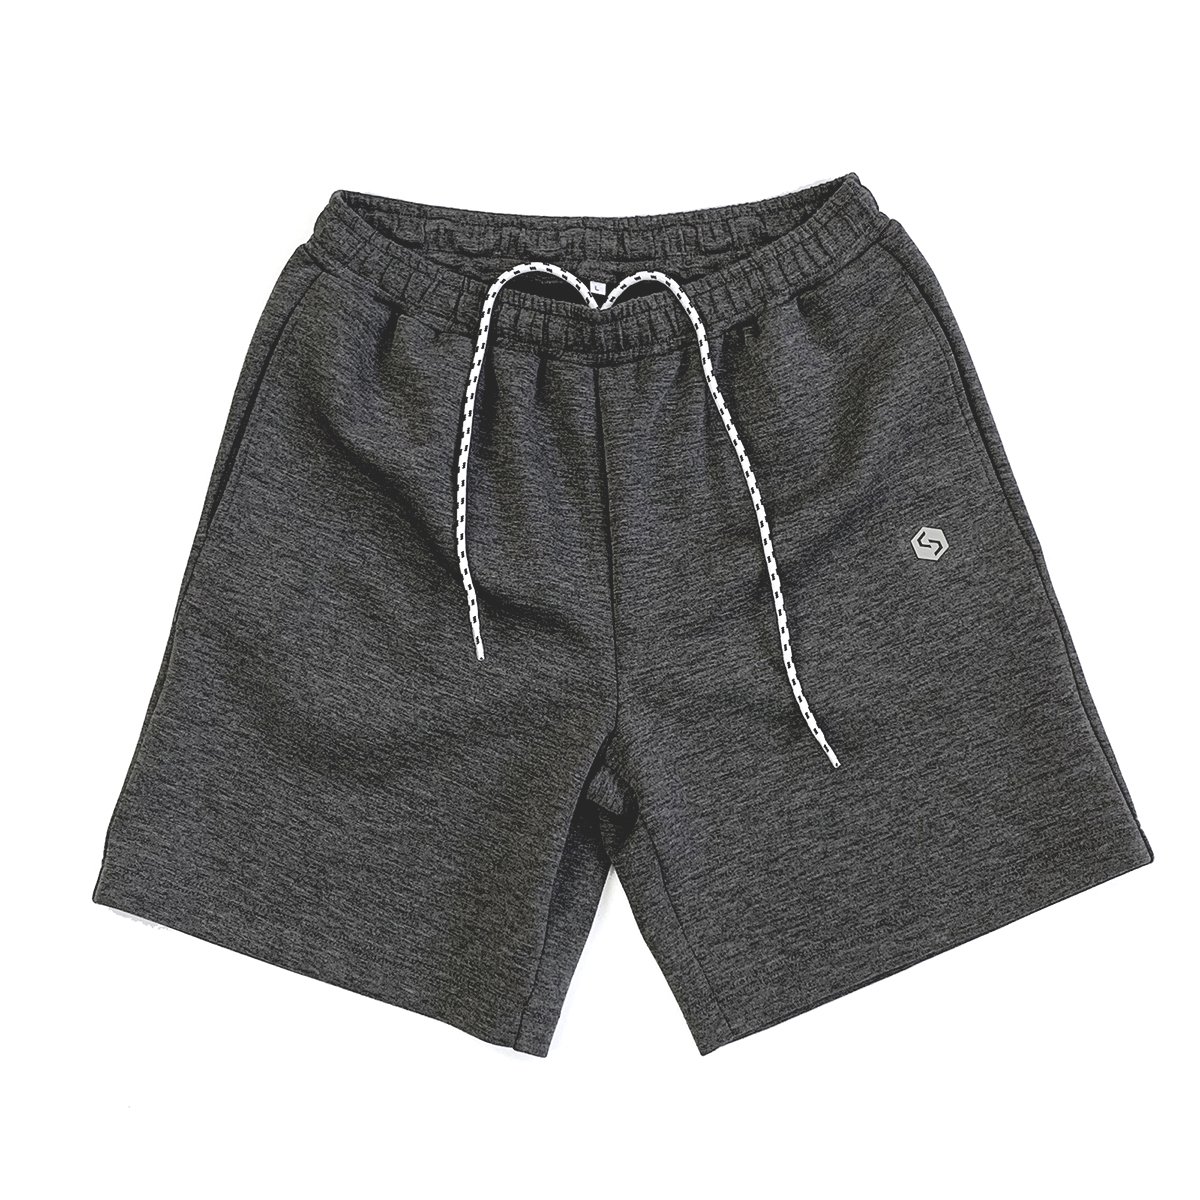 Tech Knit Shorts アスレティックトレーニングパンツ Squadra Athletic 心身を鍛えたくなるようなスポーツウェア スクアドラアスレティック